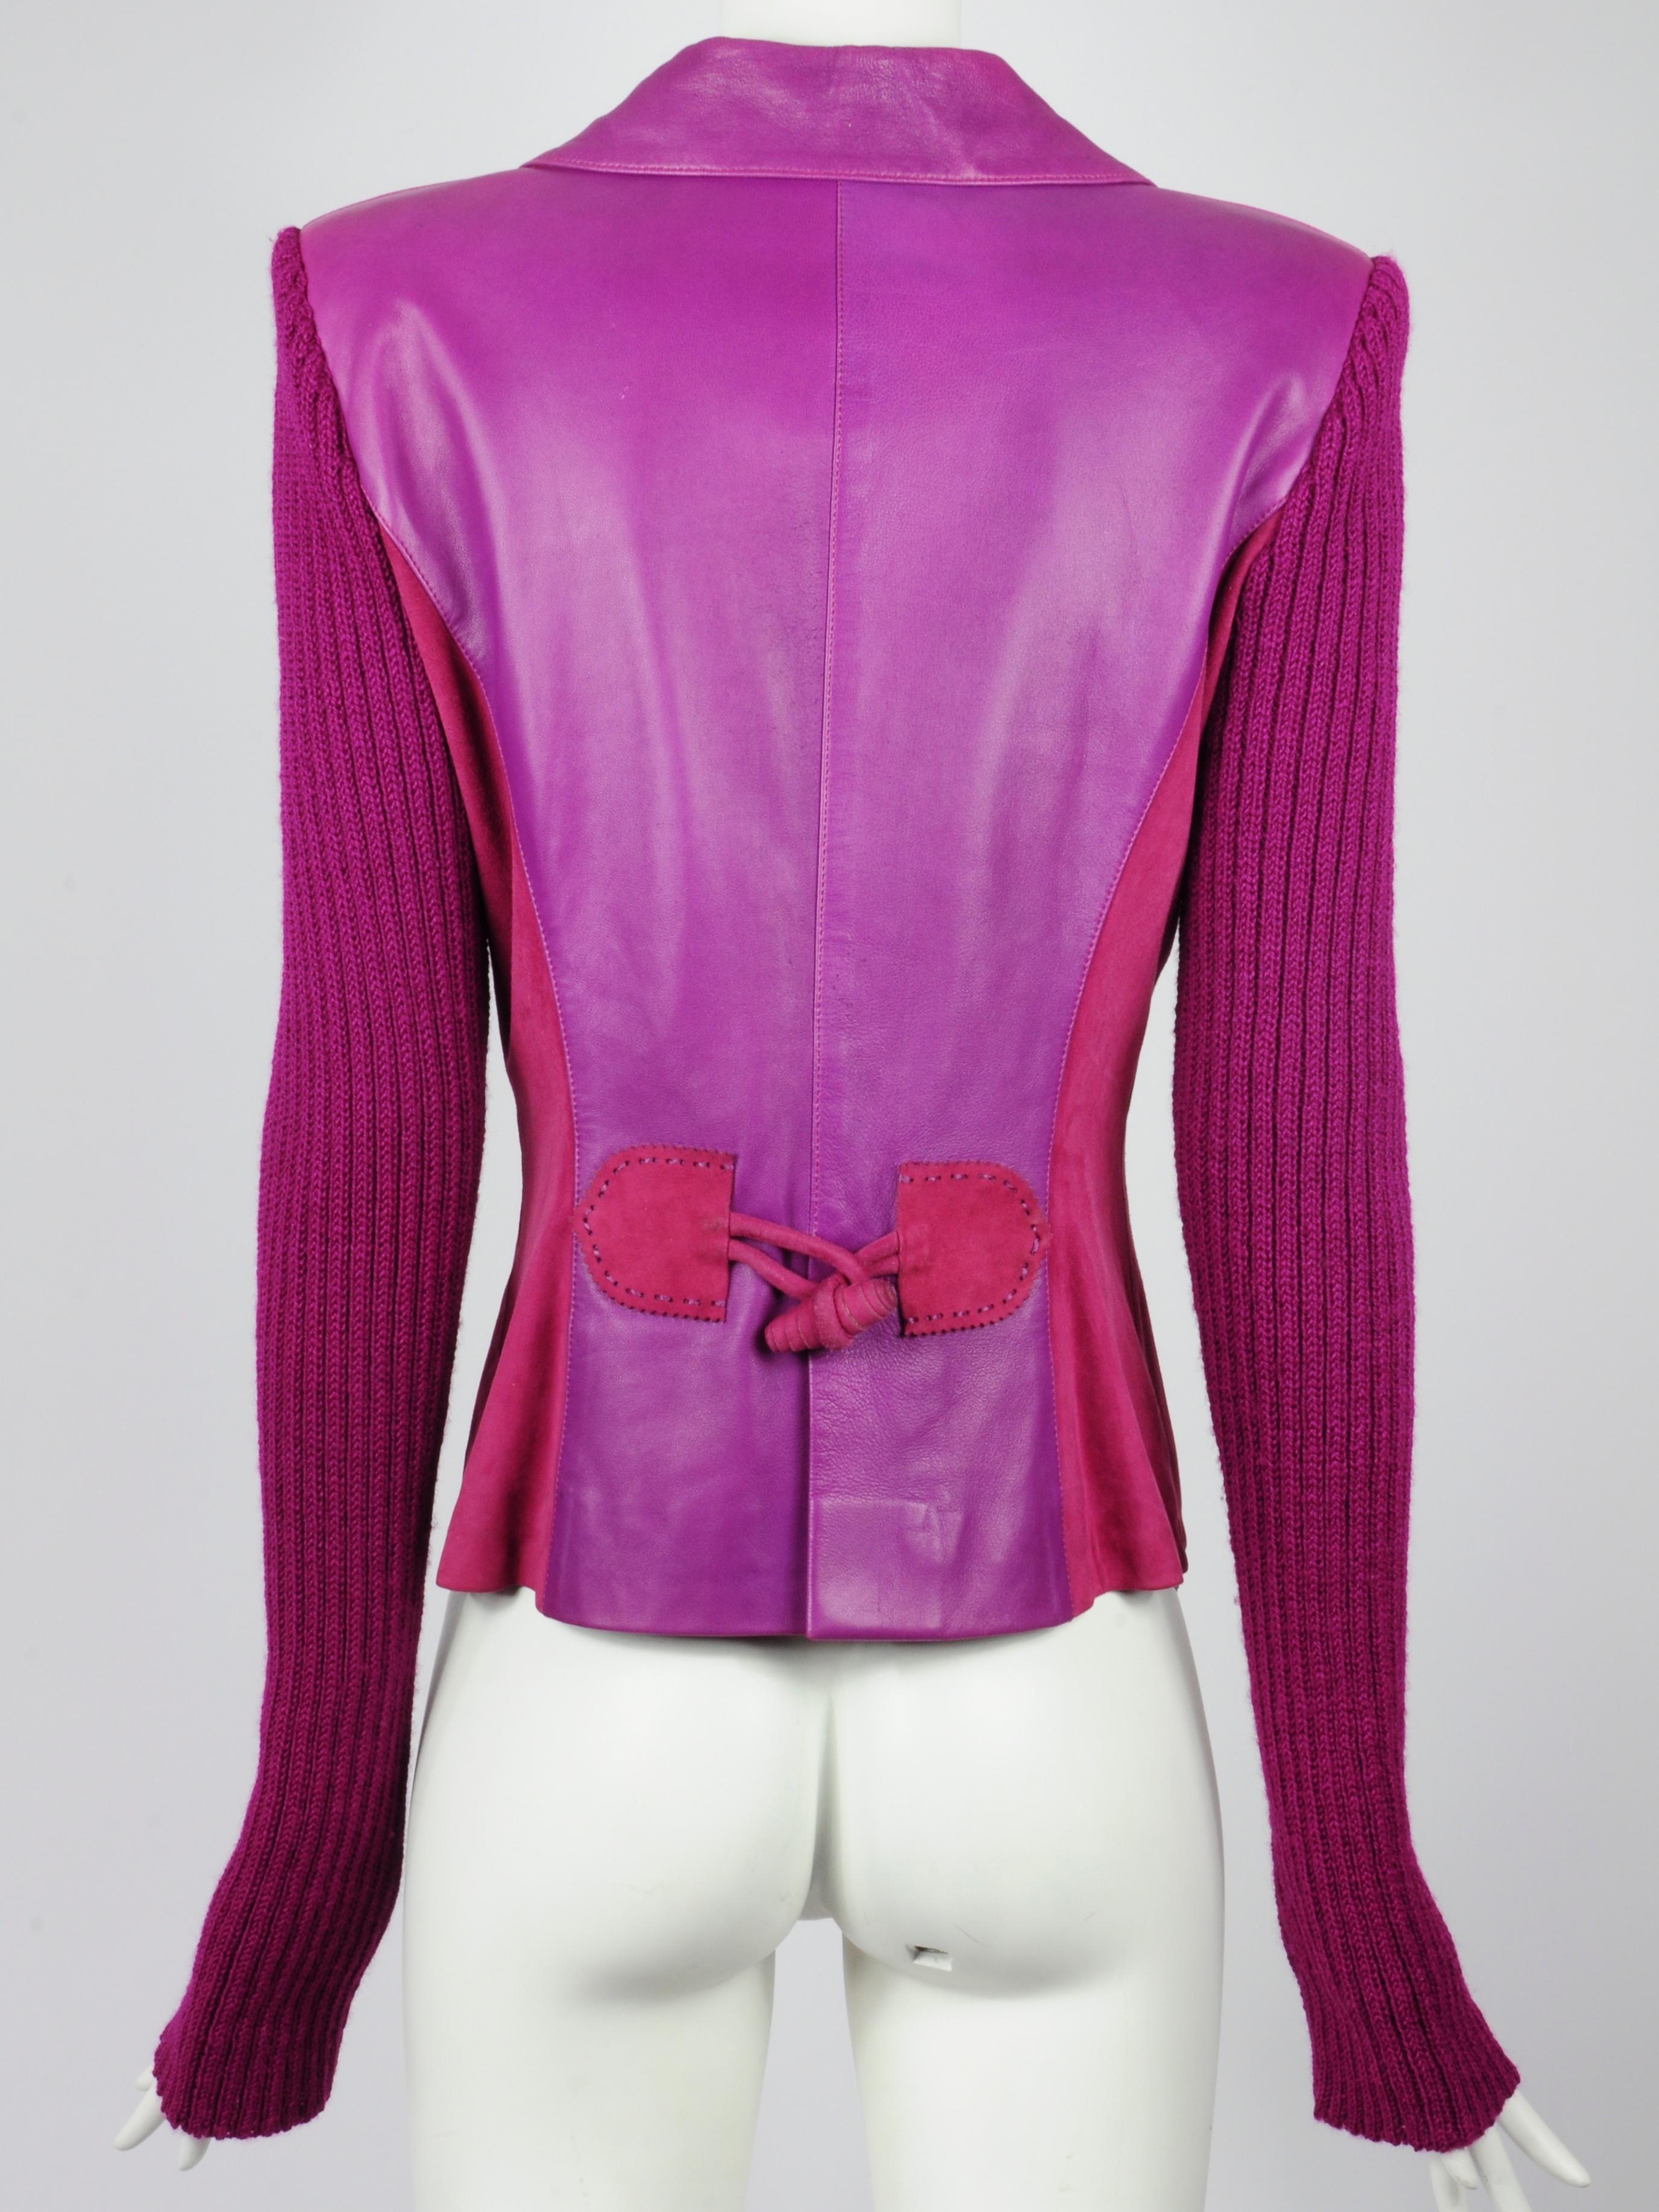 Elizabeth Wessel Monte Carlo Leather and Knitwear Purple Blazer 1980s For Sale 1